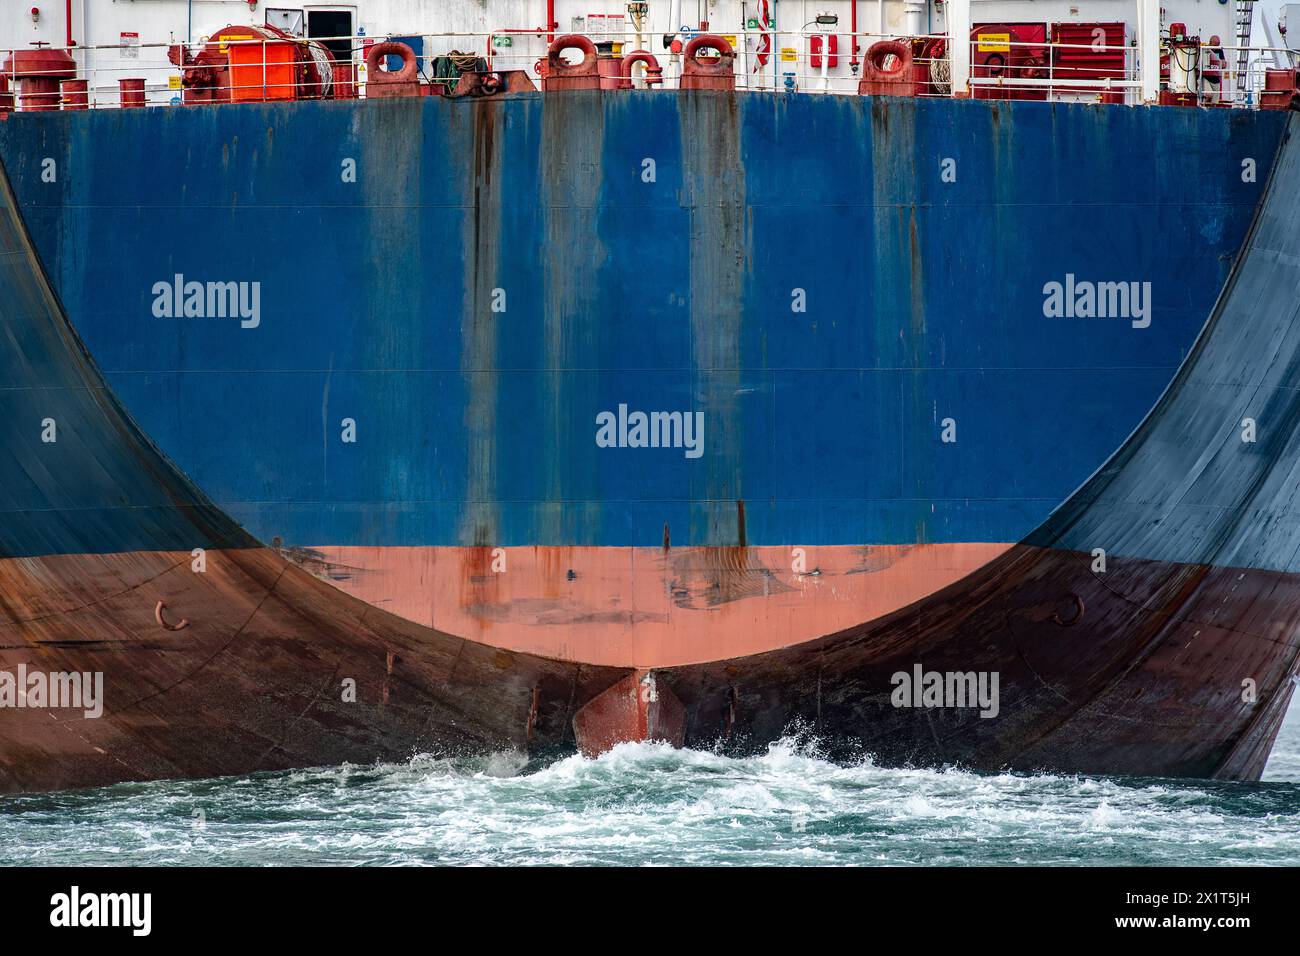 Les grands navires porte-conteneurs bleus à l'arrière avec le gouvernail poussent une vague géante à travers l'océan. Banque D'Images